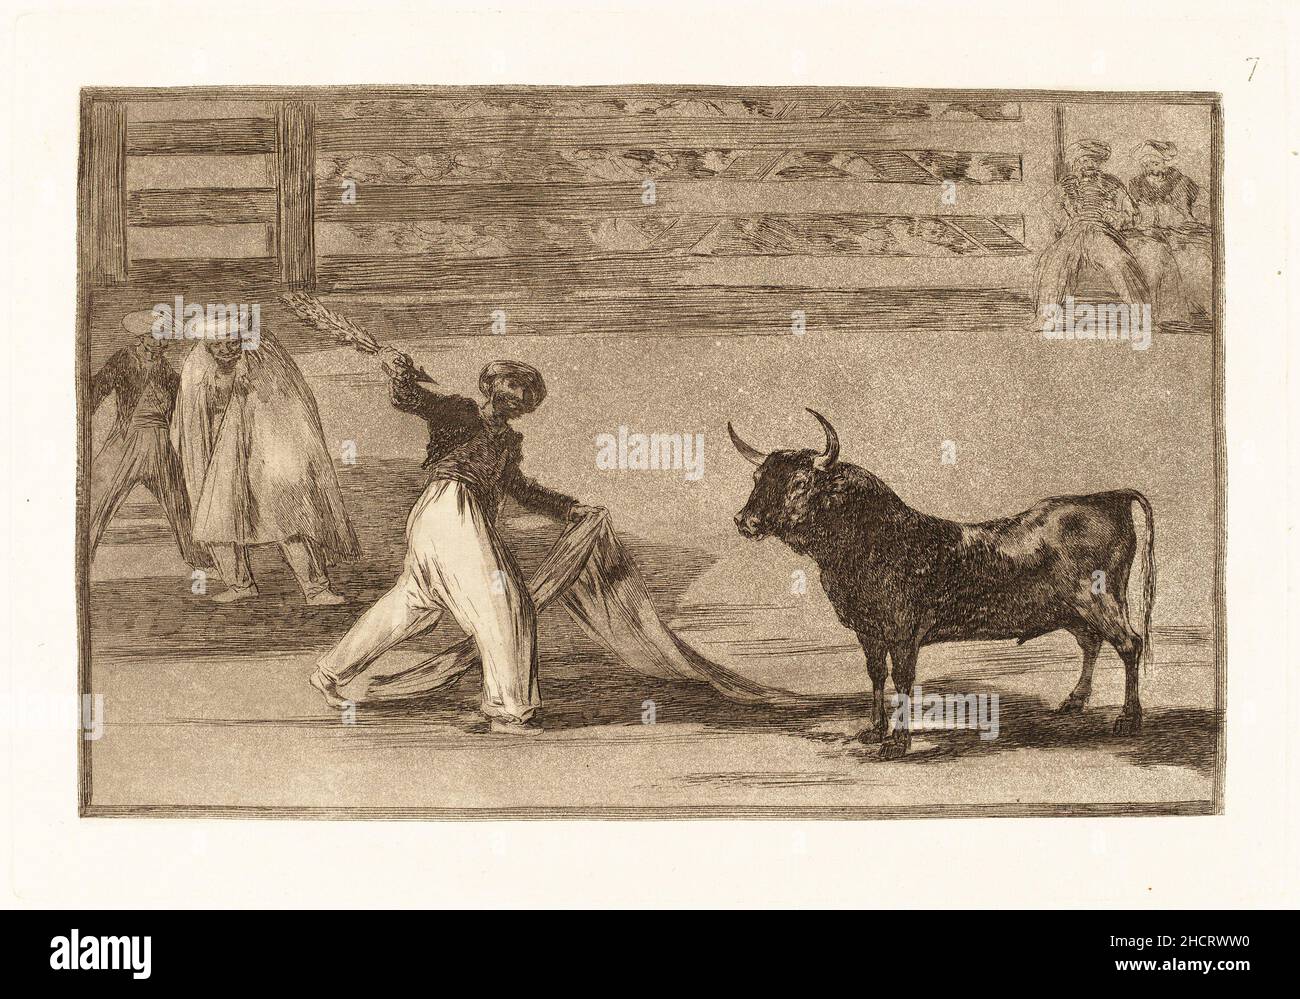 Francisco de Goya, Origen de los arpones o banderillas (Origin of the Harpoons or Banderillas). This is print number 7 in a 33 print series on bullfighting. Stock Photo